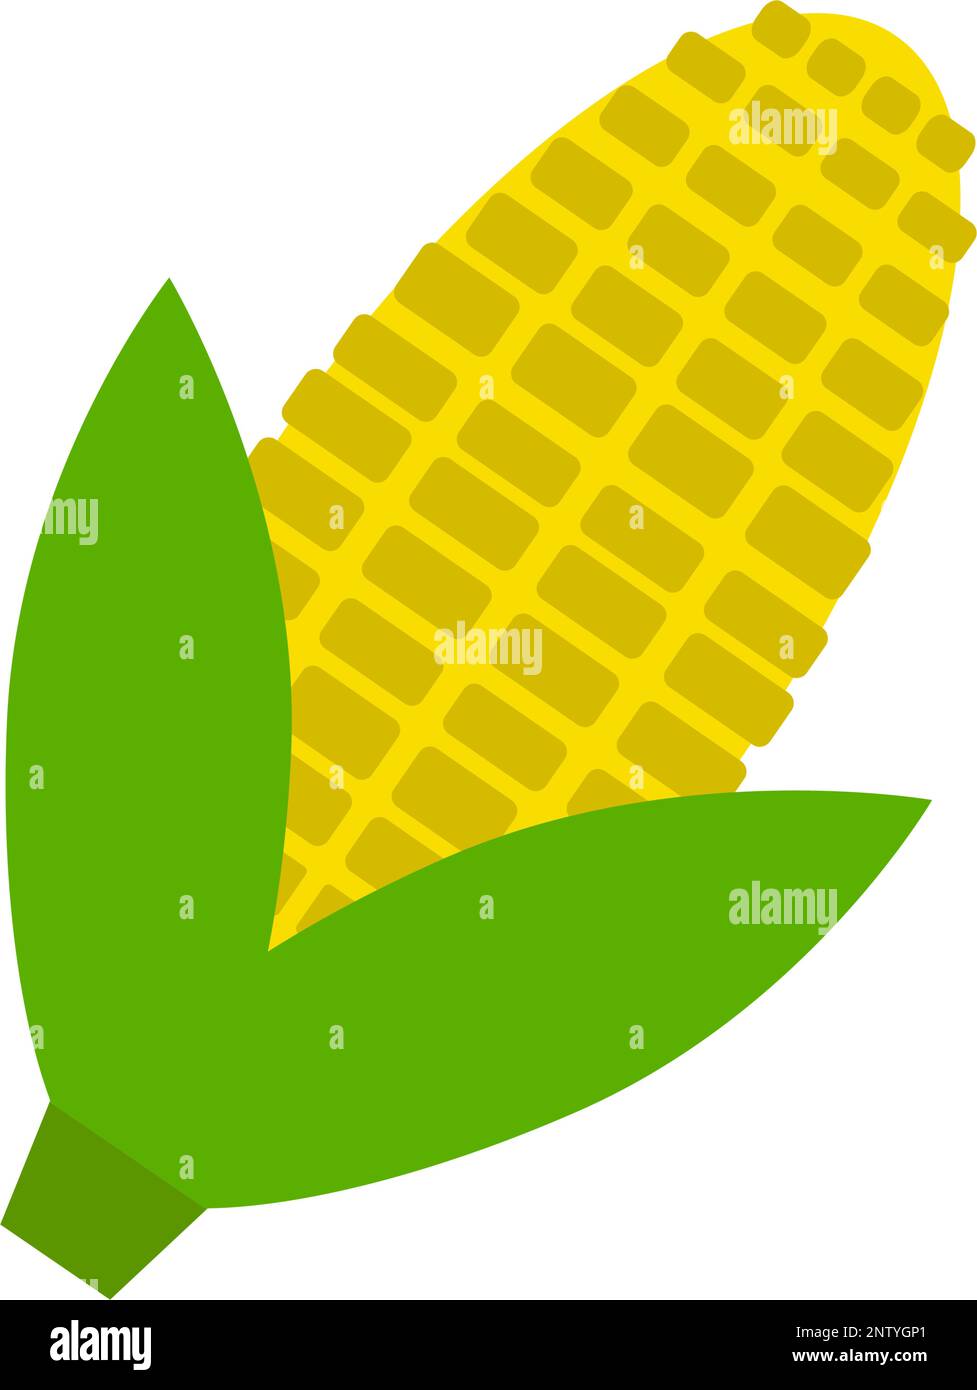 Sweet corn icon. Maize. Editable vector. Stock Vector